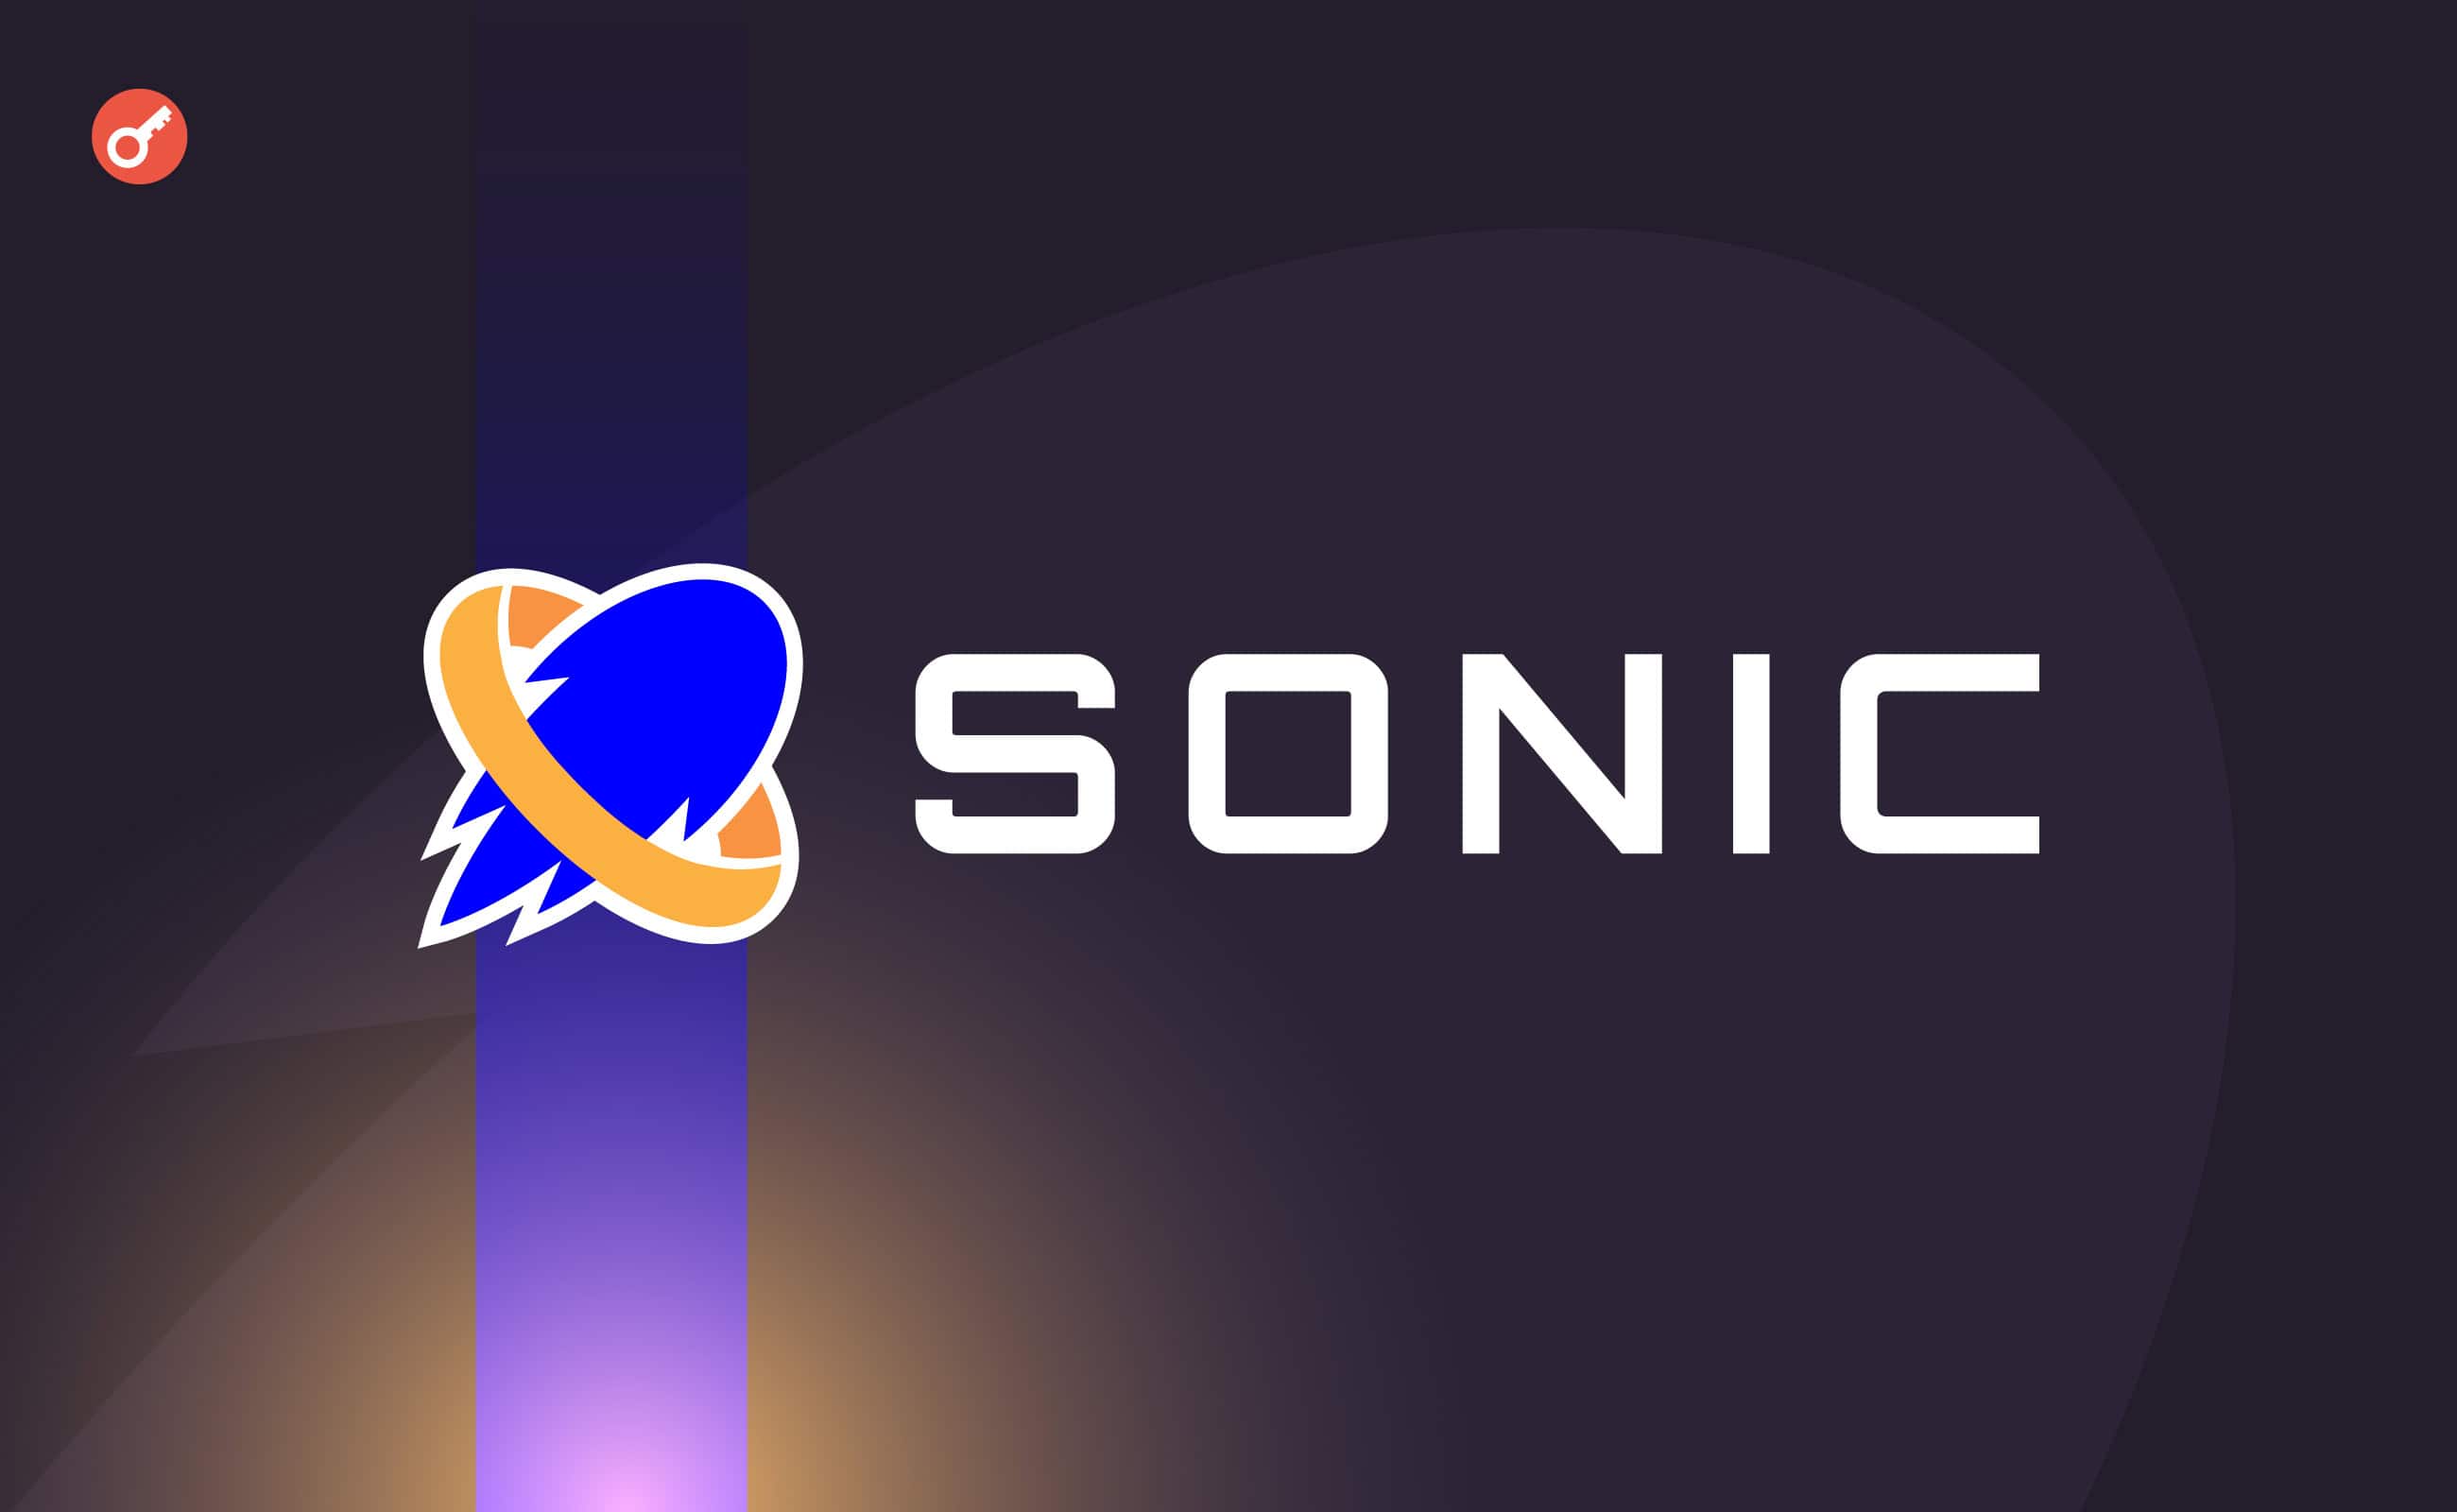 L2-мережа Sonic закрила раунд фінансування серії А на $12 млн . Головний колаж новини.